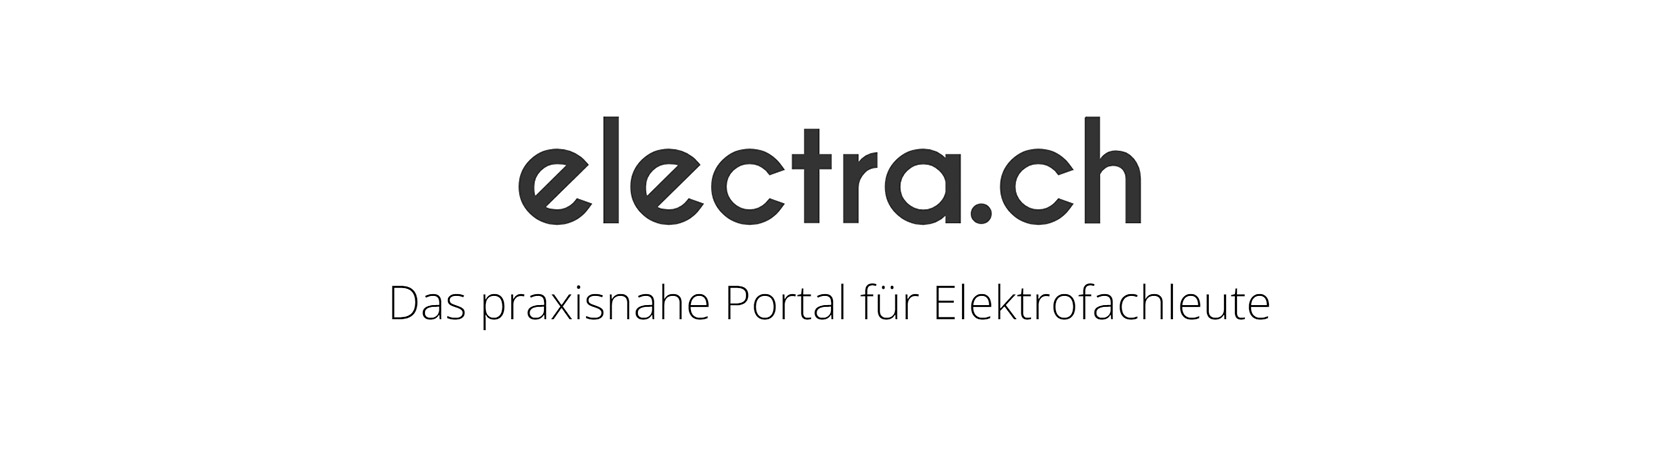 electra.ch – das neue Electrosuisse Magazin für Elektrofachleute – ist da! – Electrosuisse